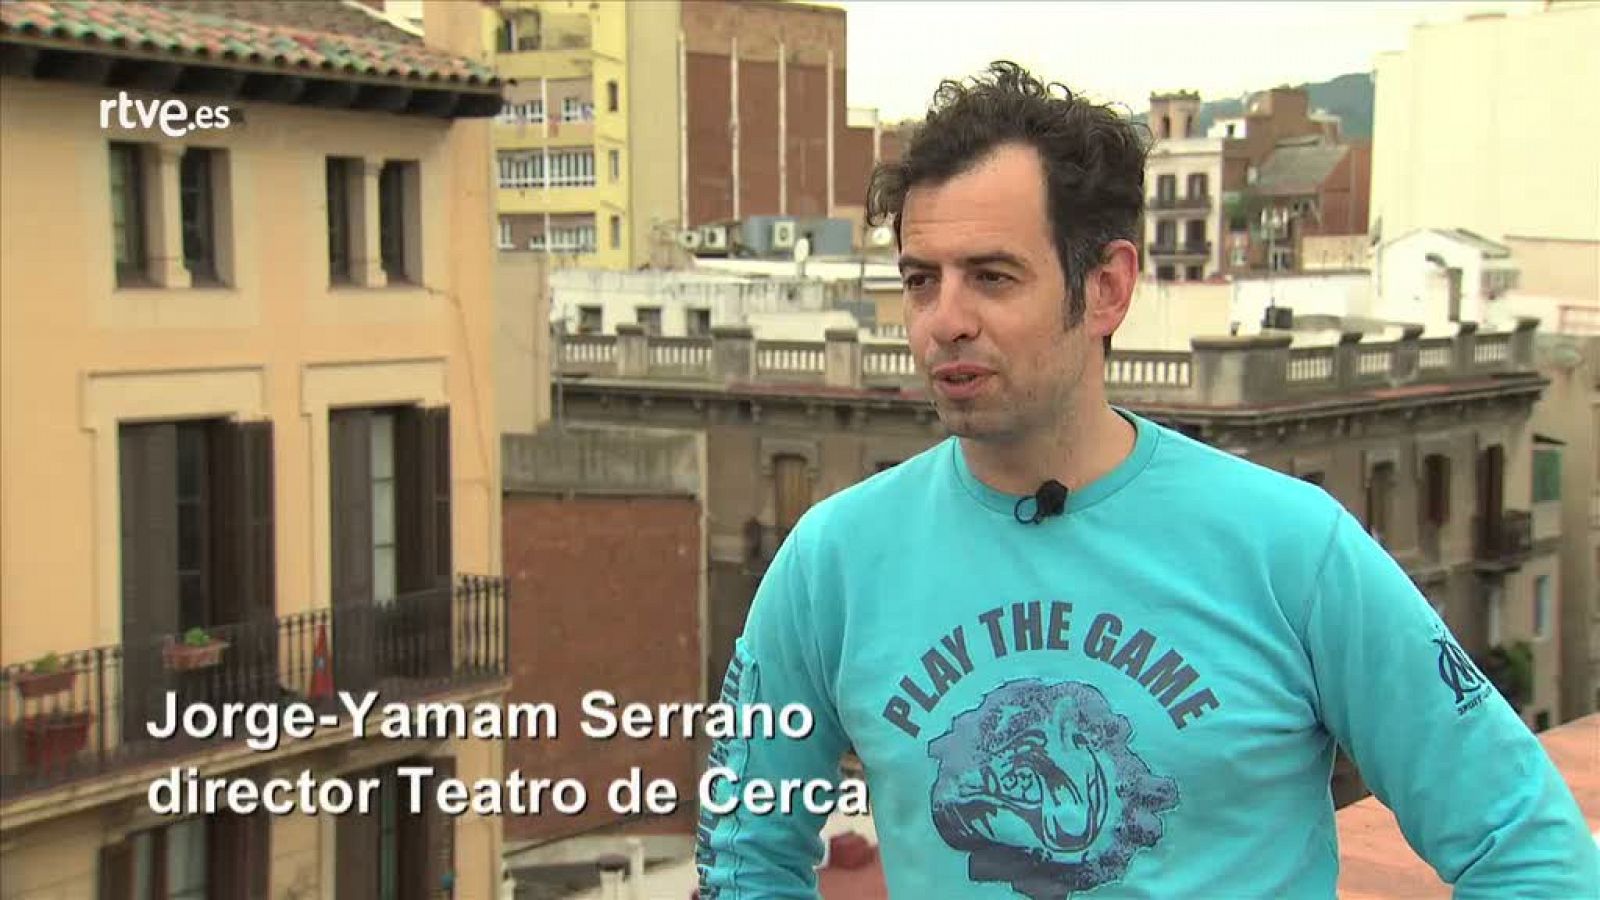 Atención obras: ¡Qué vaya bonito! - Teatro en las terrazas de Barcelona | RTVE Play